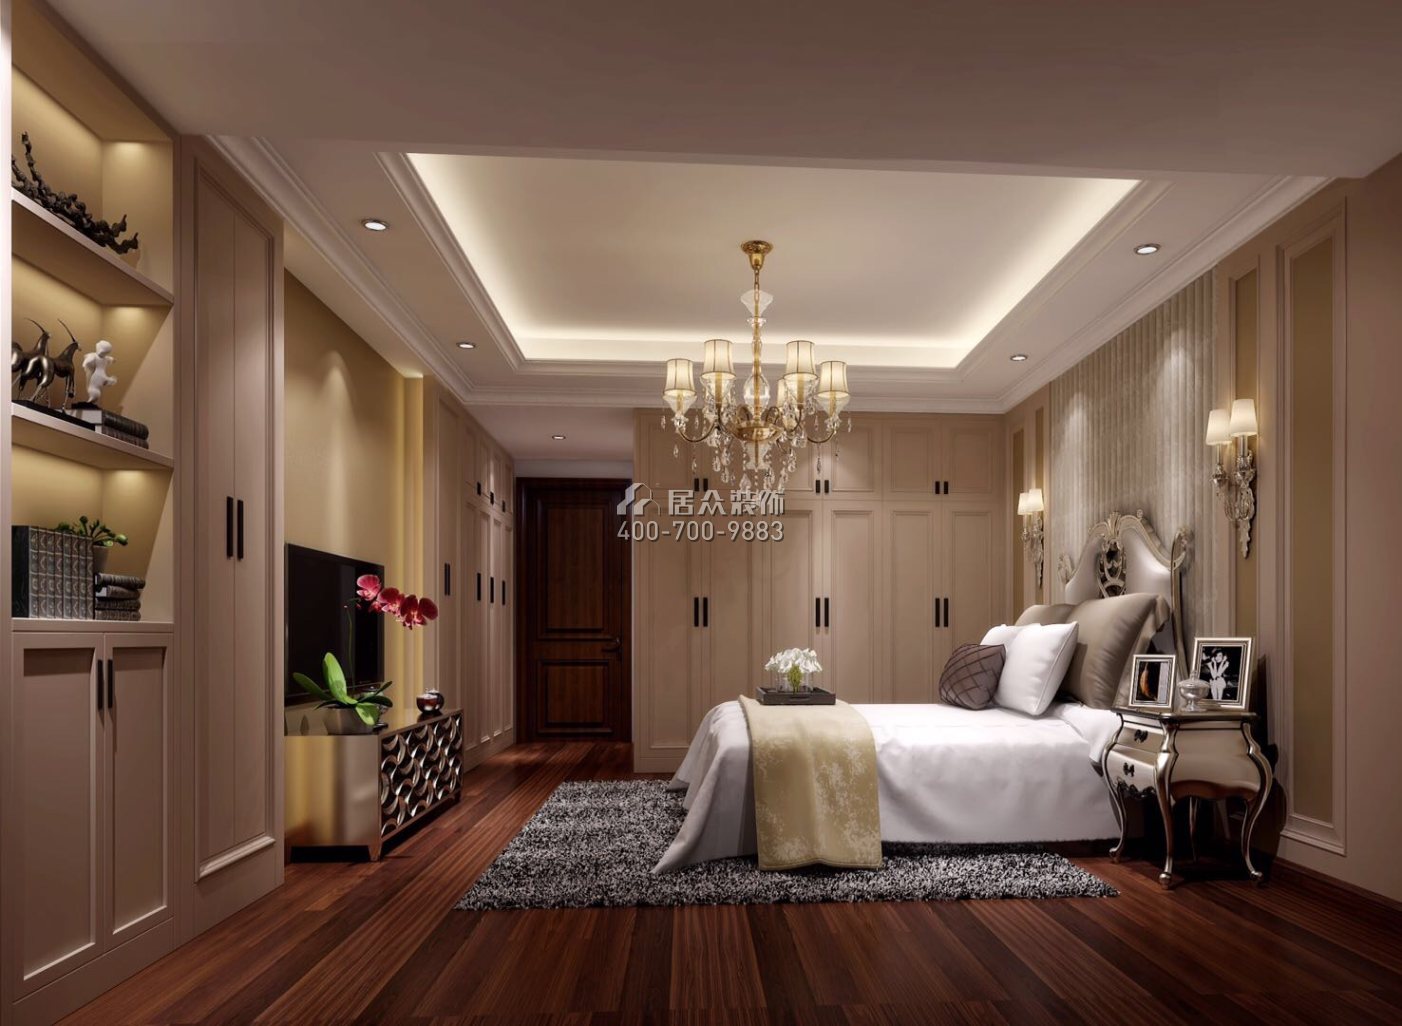 福中福幸福海岸180平方米欧式风格平层户型卧室装修效果图